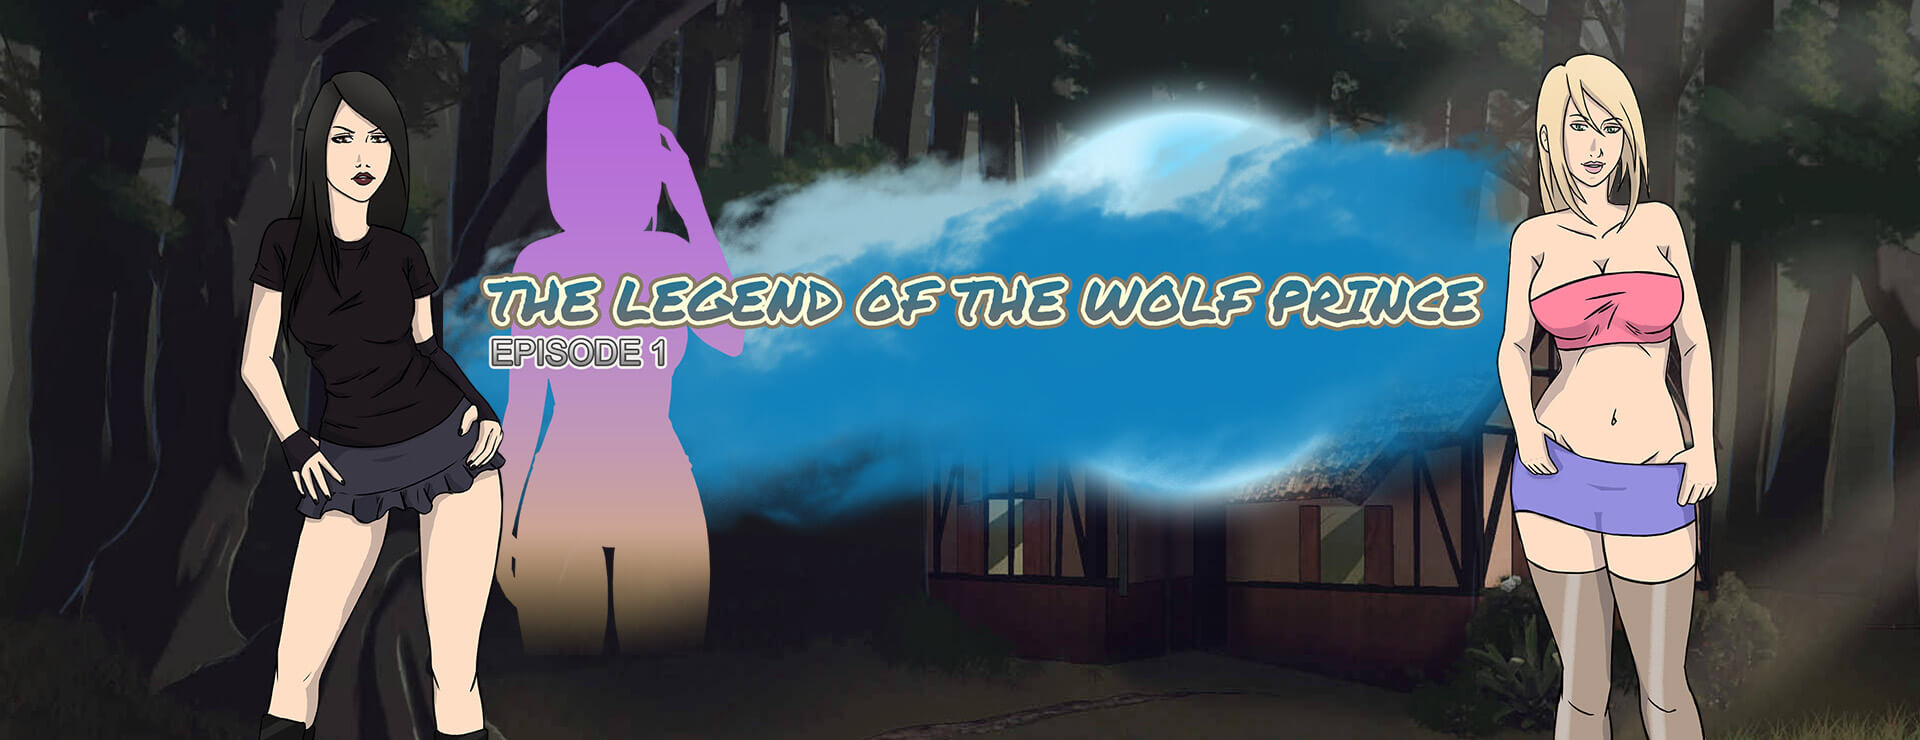 The Legend of the Wolf Prince - Episode 1 - Powieść wizualna Gra